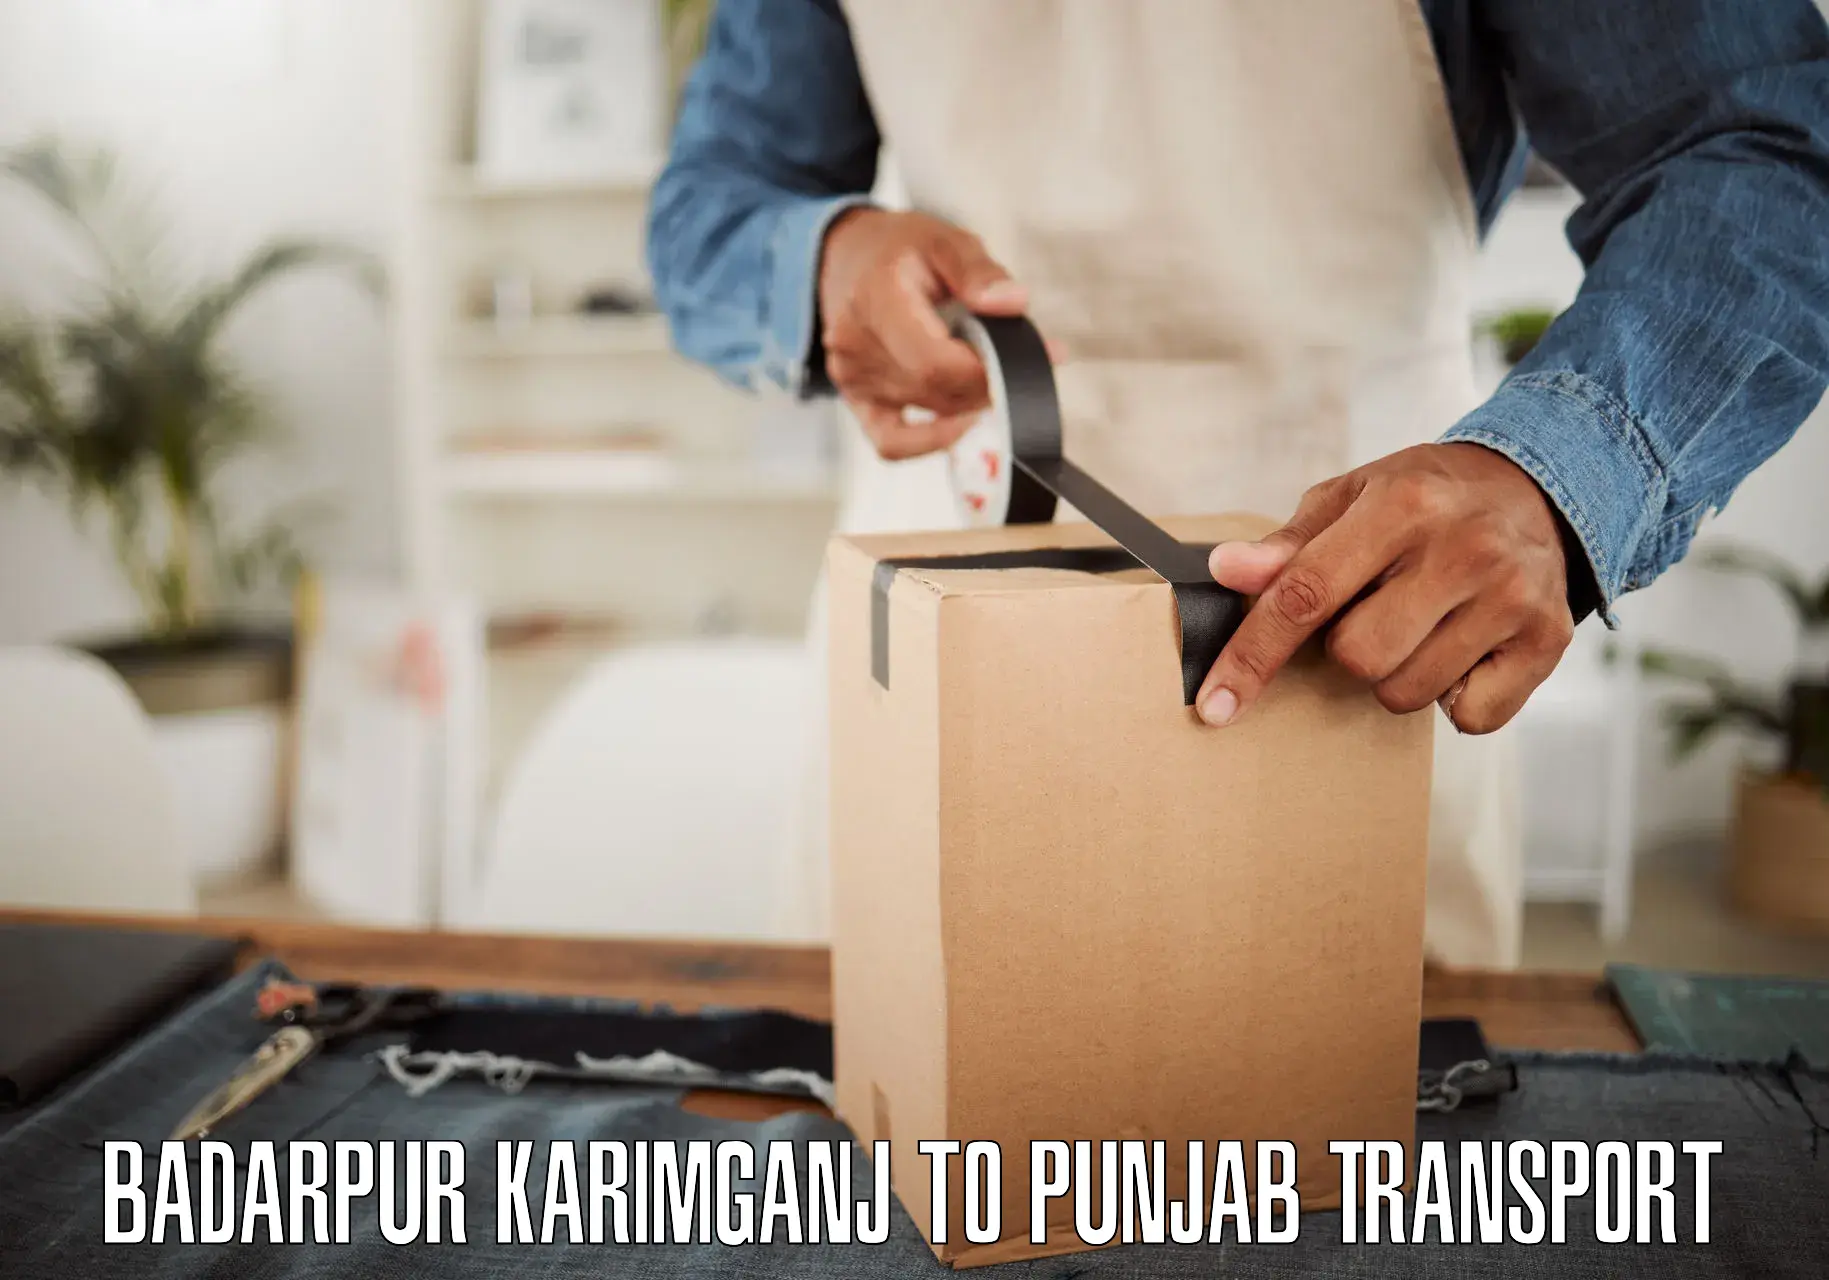 Goods delivery service Badarpur Karimganj to Patran